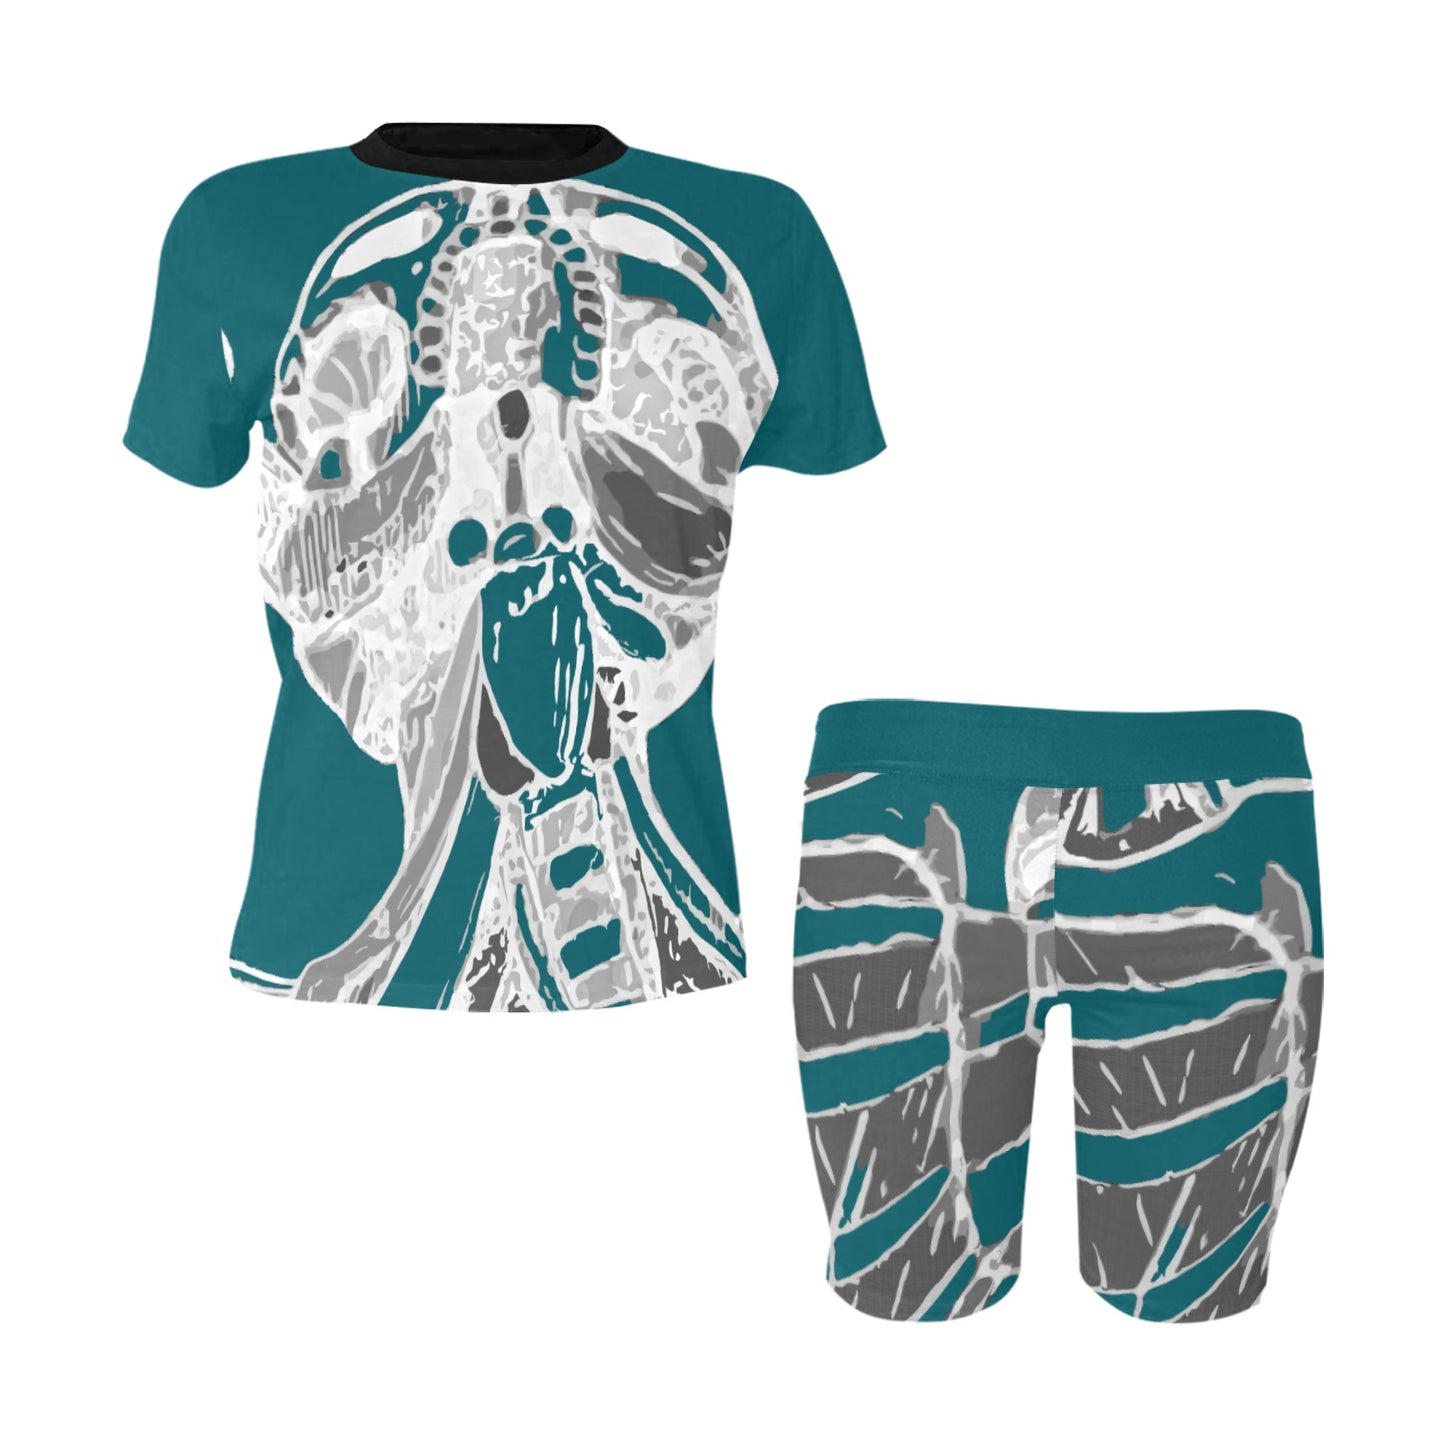 Women's Two-Piece Yoga Shirt & Shorts Sets